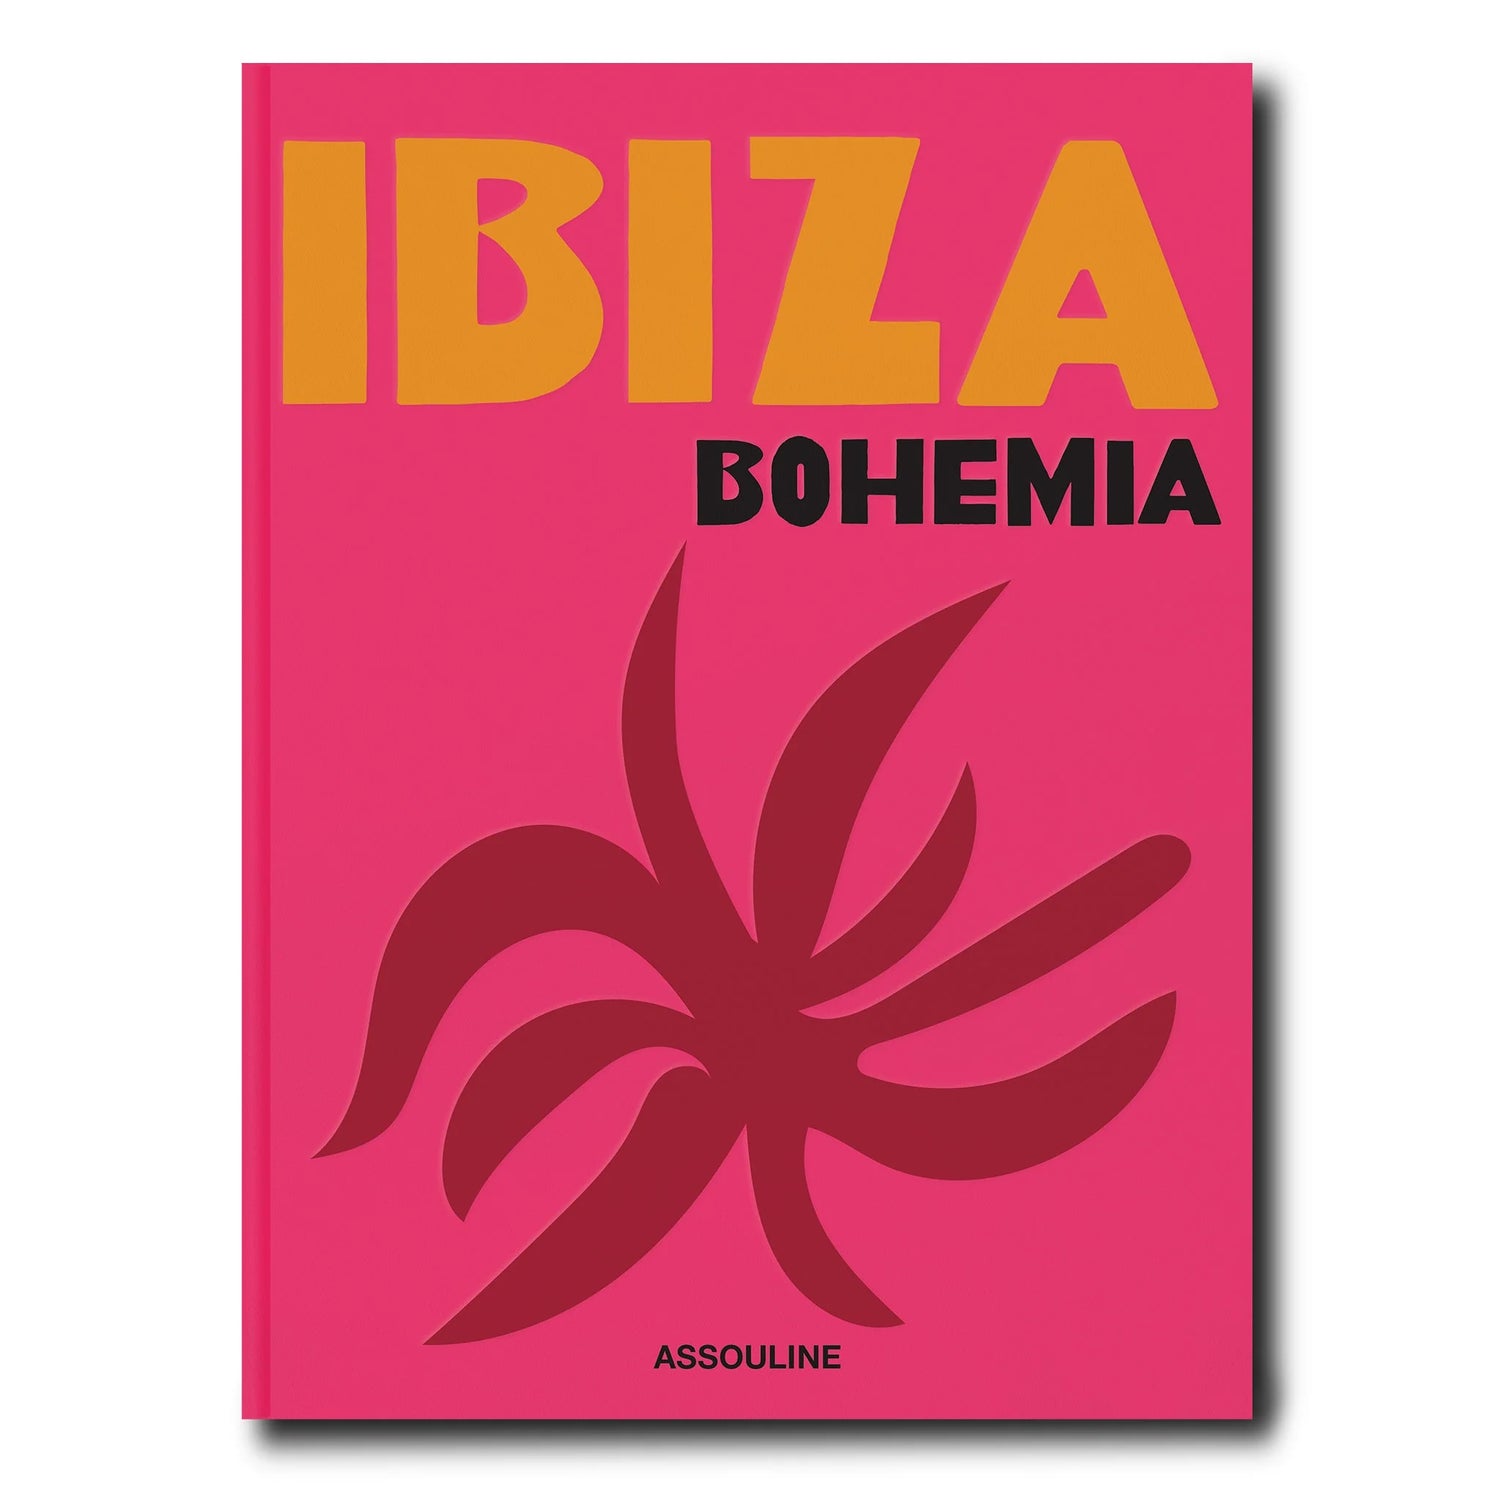 Travel Book Books in Ibiza Bohemia at Wrapsody